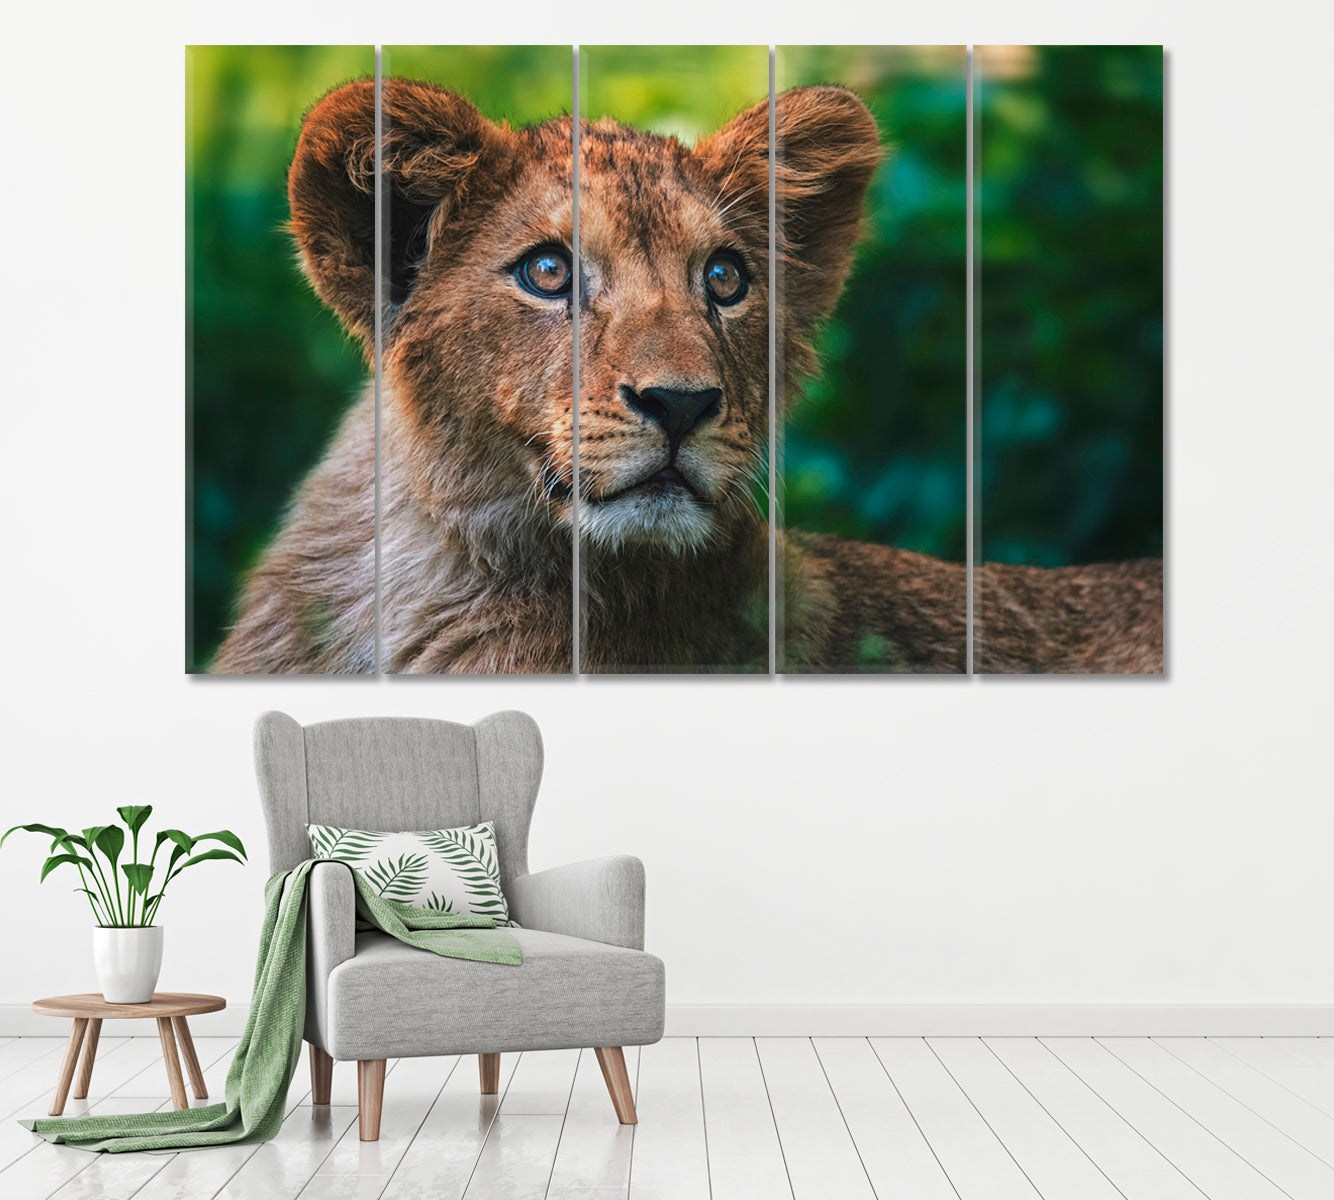 Lion Cub Portrait Canvas Print ArtLexy 5 Panels 36"x24" inches 